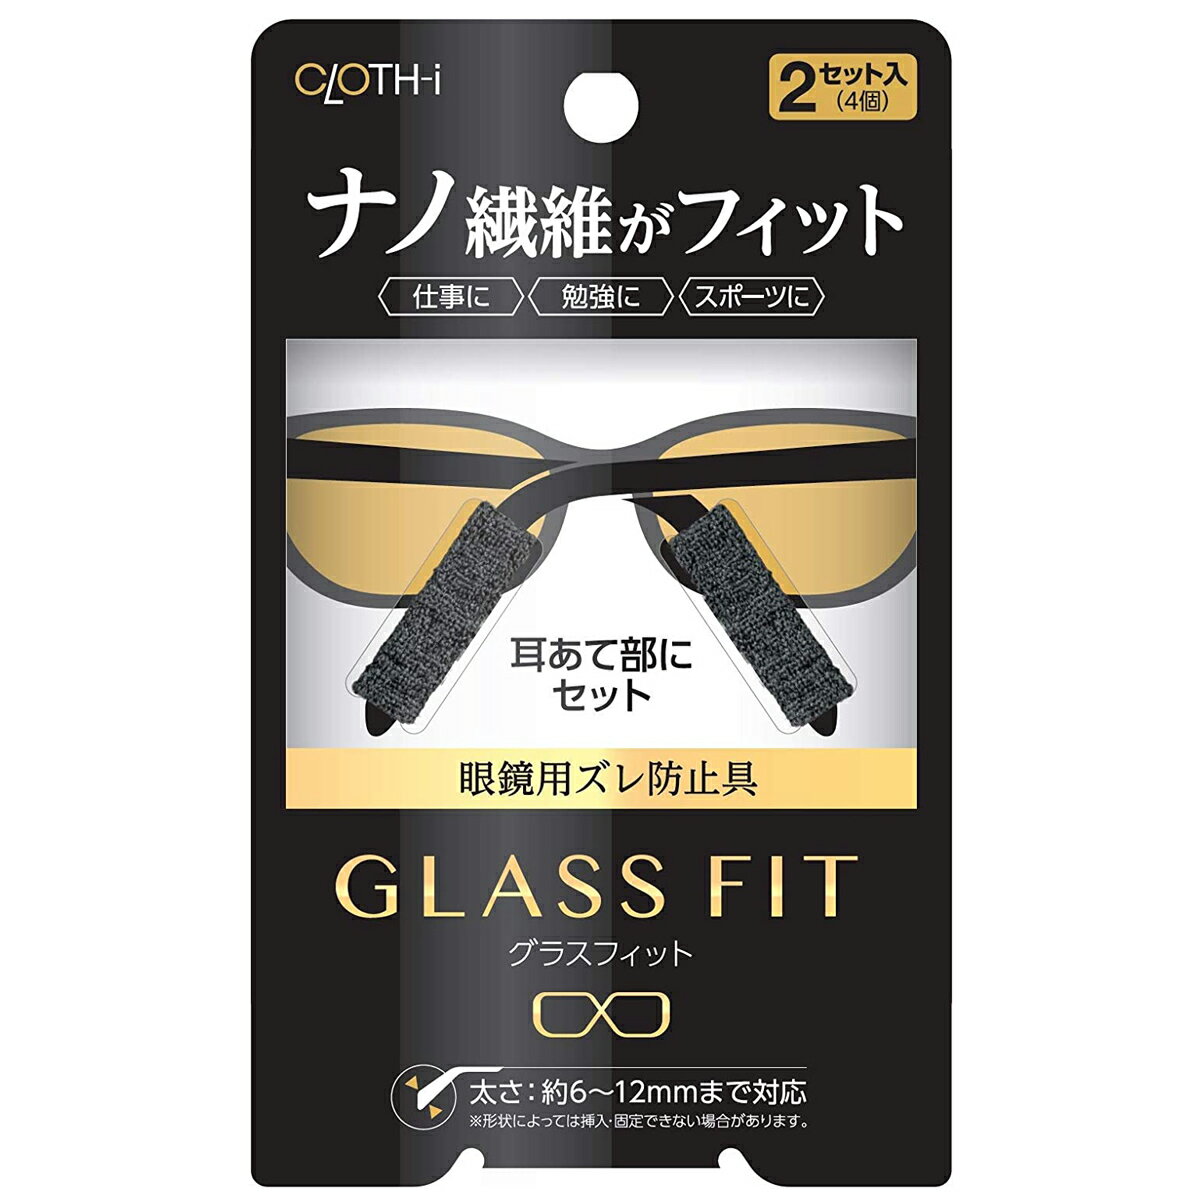 クロスアイ グラスフィット メガネ用ズレ防止具 メガネ 眼鏡 めがね スポーツ 勉強、仕事等に